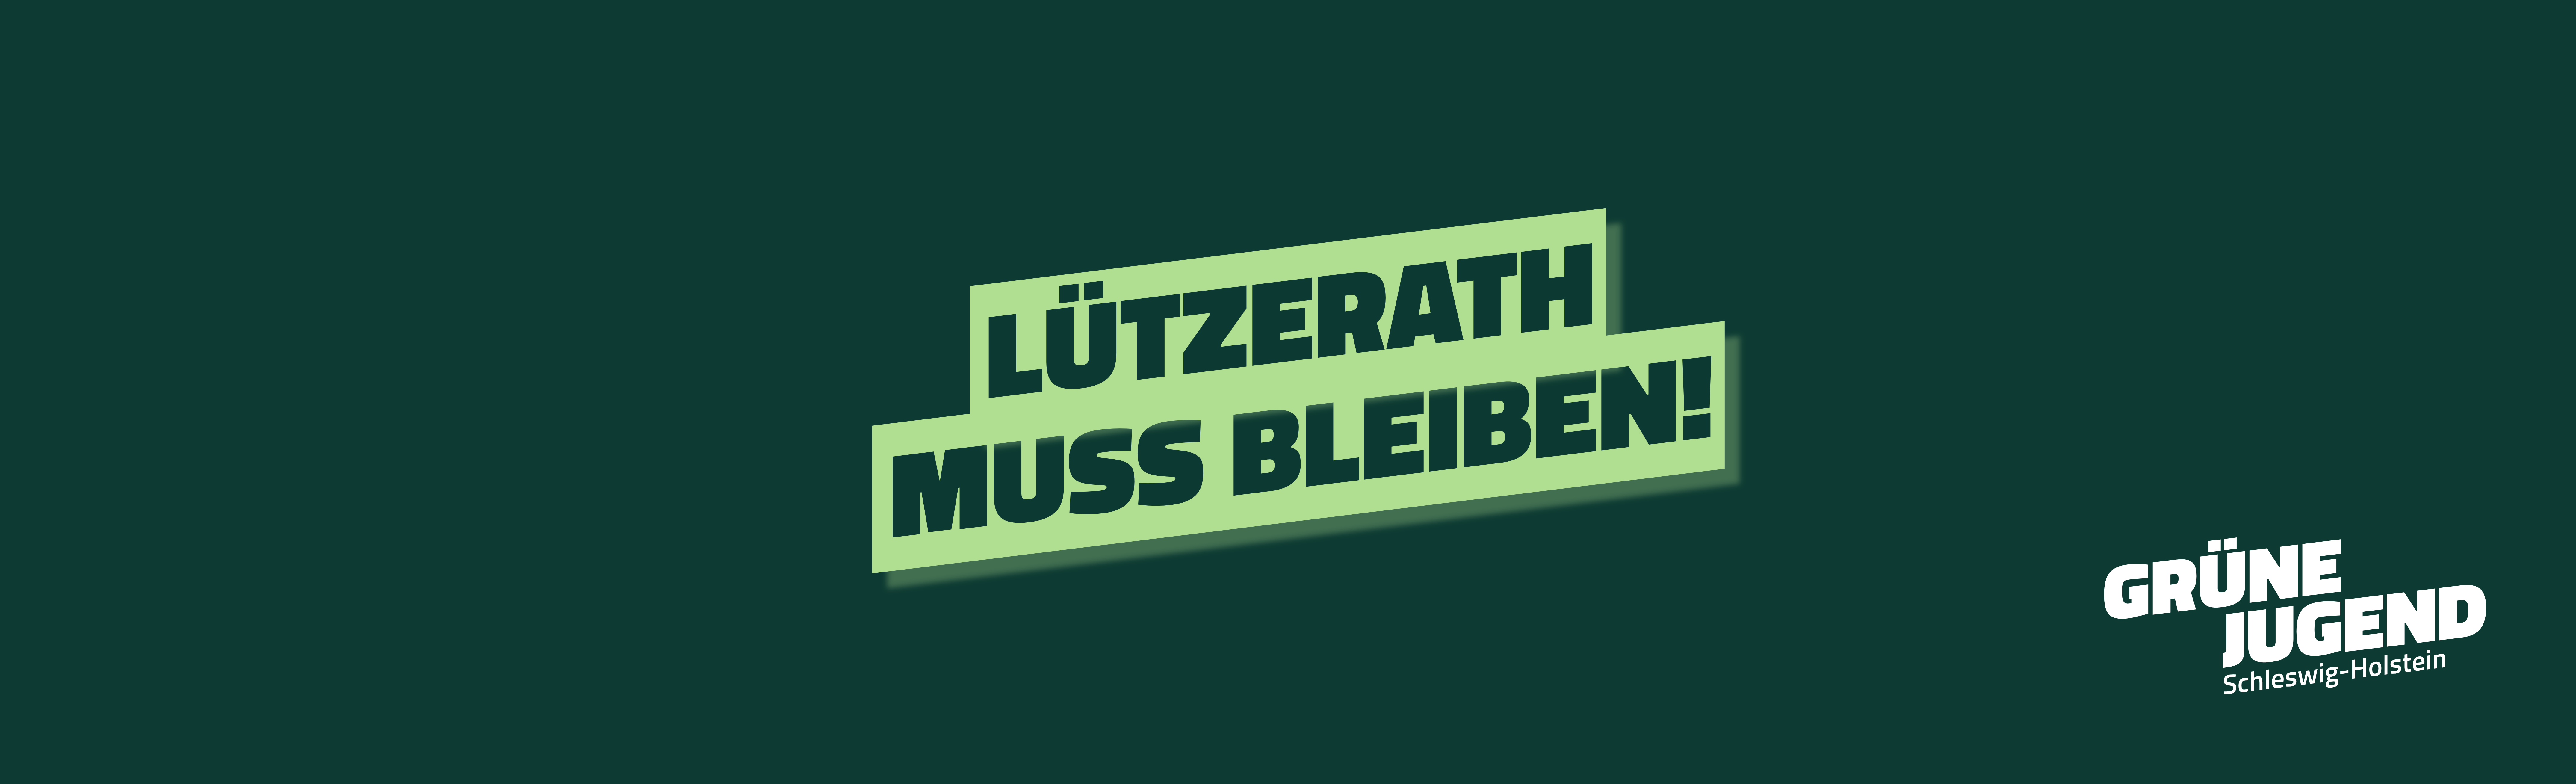 Für das Einhalten des 1,5 Grad-Limits und konsequente Grüne Politik: Lützerath muss bleiben!